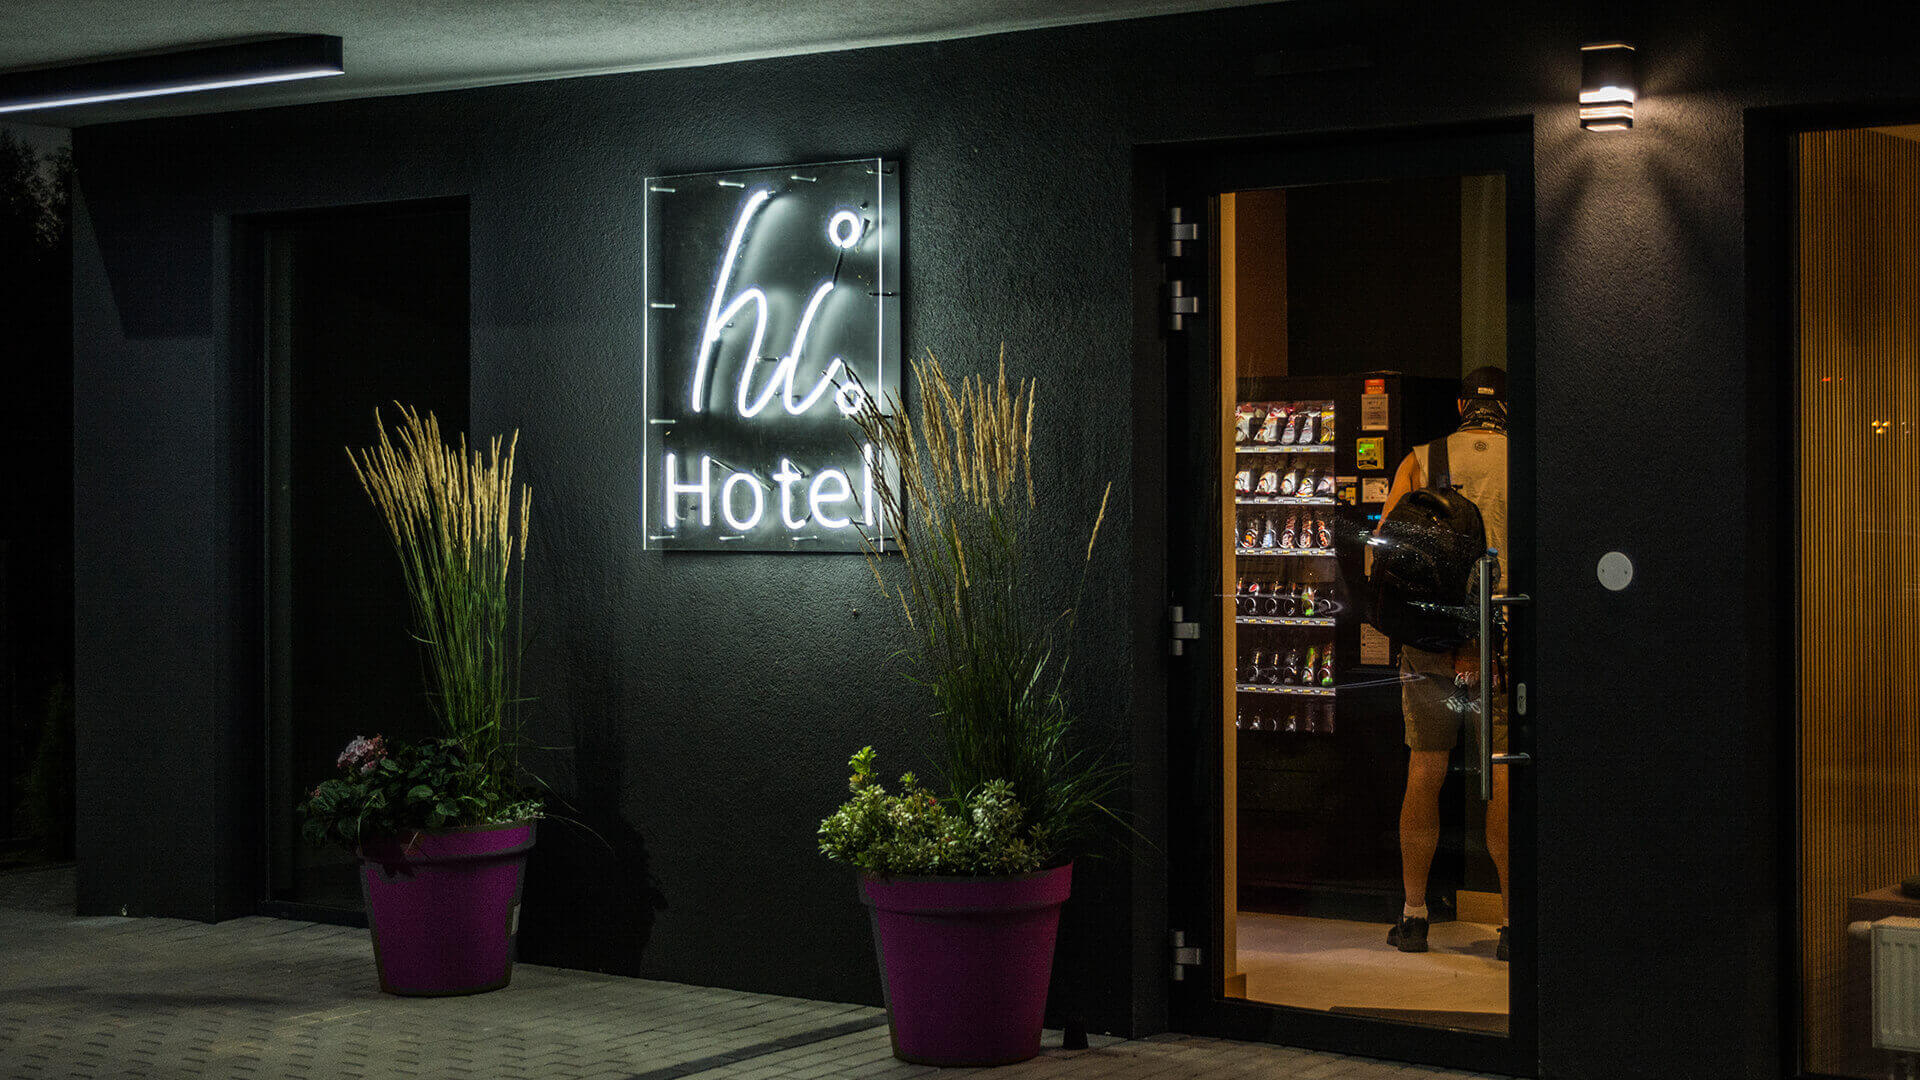 hi hotel hihotel - hi-hotel-neon-na-scianie-neon-za-szyba-neon-podswietlany-neon-przy-wejsciu-neon-na-wysokosci-linie-neonowe-kolor-bialy-logo-firmowe-neon-na-betonie-gdansk-lotnisko (48)